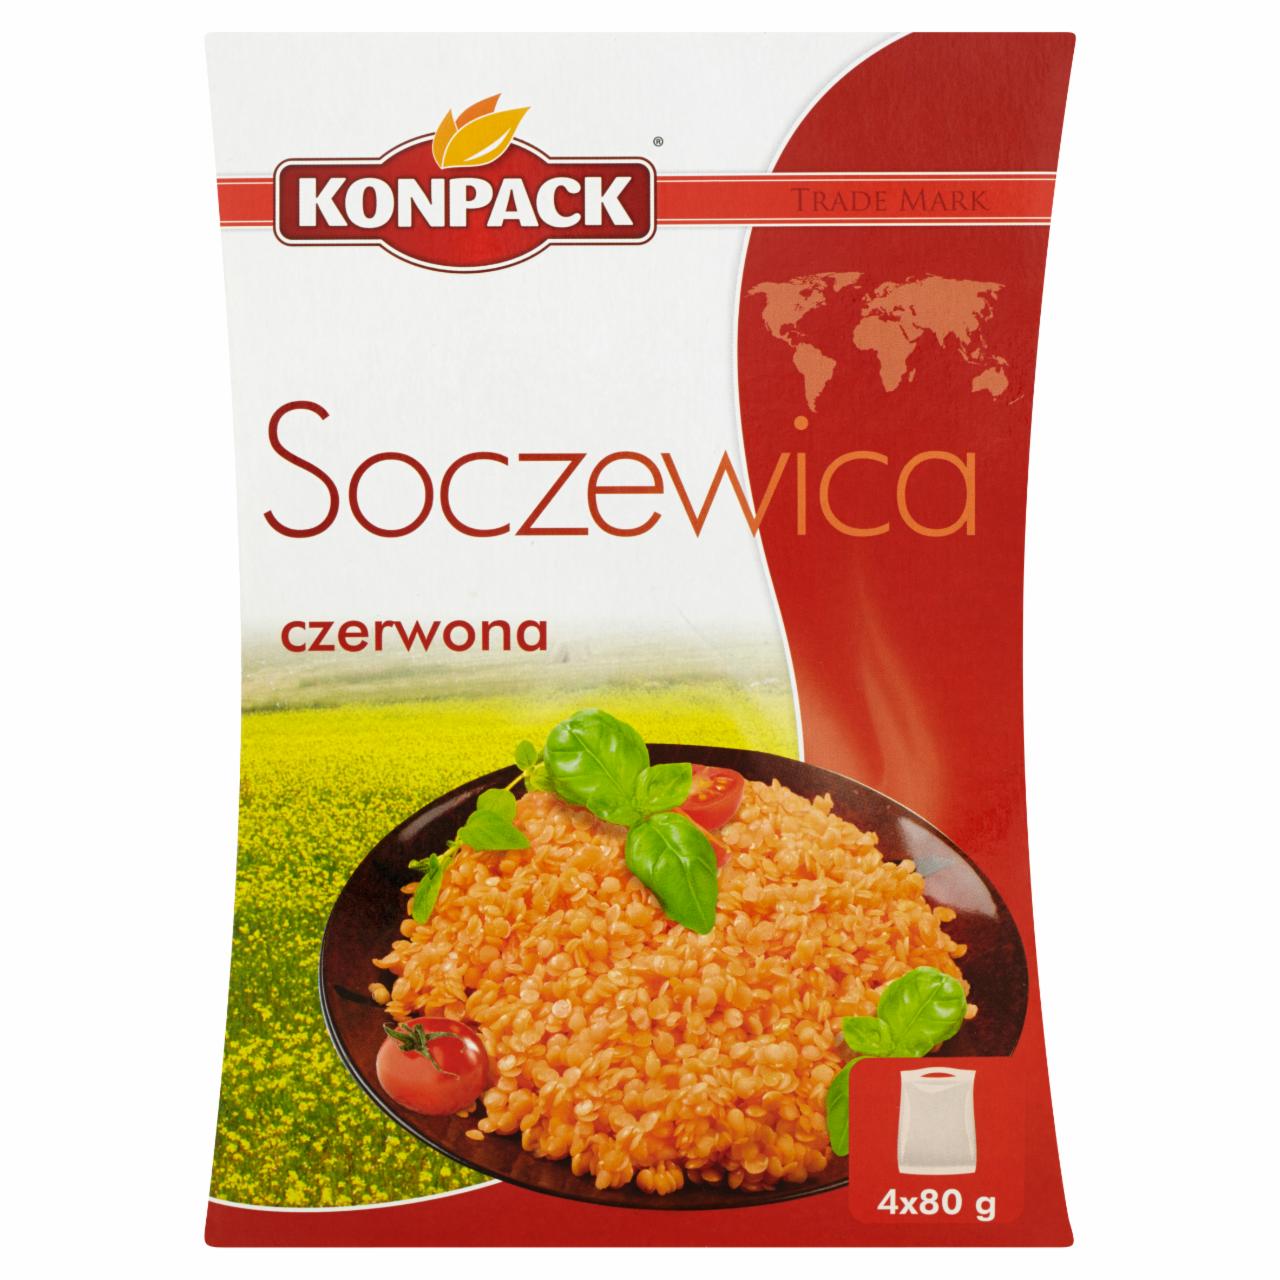 Zdjęcia - Konpack Soczewica czerwona 320 g (4 torebki)